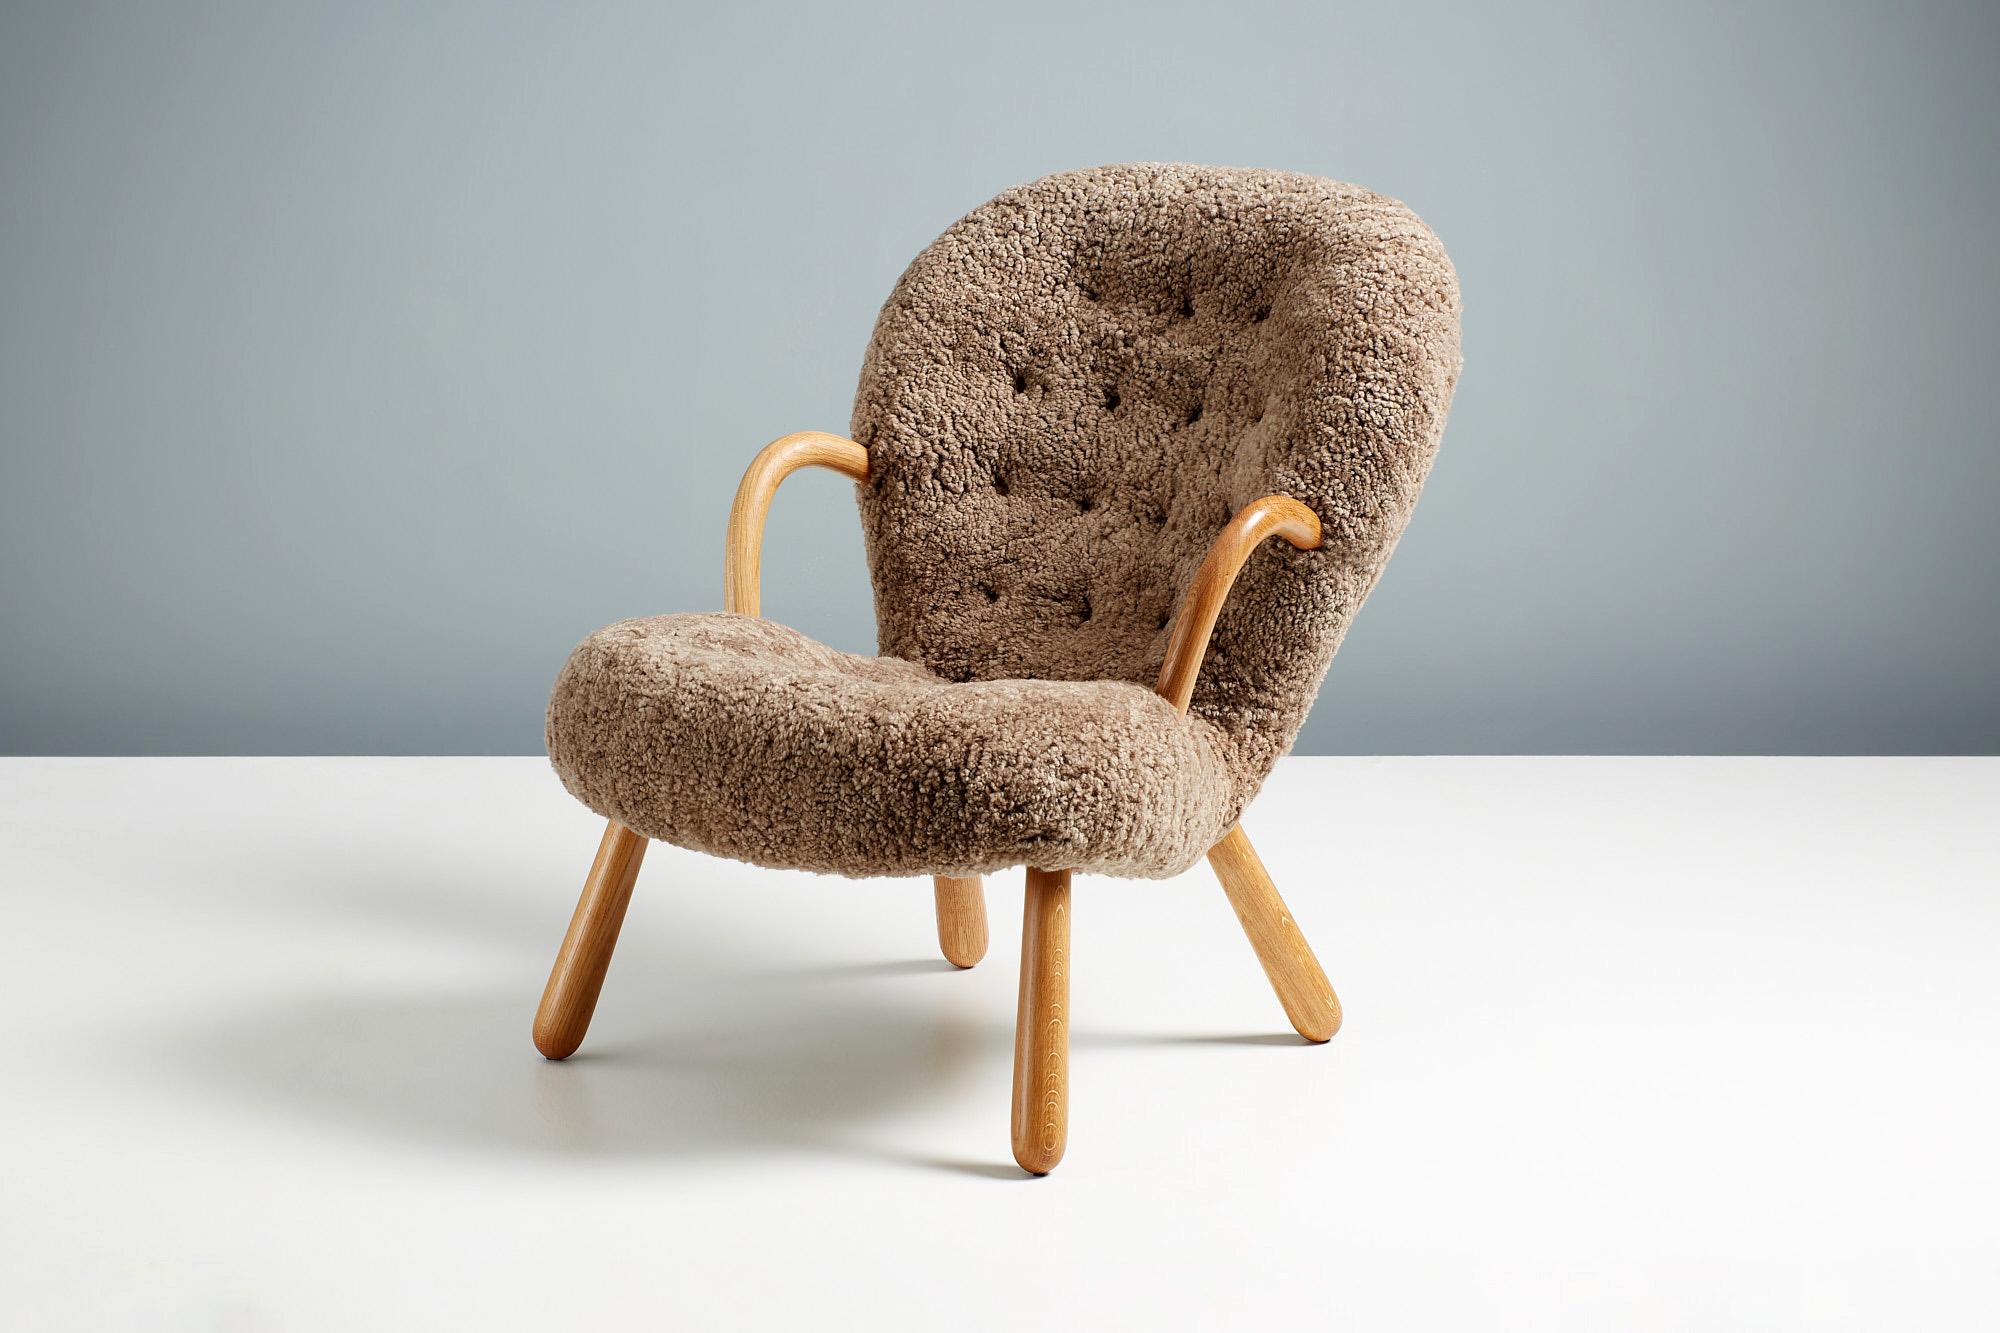 Offizielle Neuauflage des kultigen Muschelsessels von Arnold Madsen.

Dagmar ist stolz darauf, in Zusammenarbeit mit dem Nachlass von Arnold Madsen den Clam Chair - eines der beliebtesten und begehrtesten skandinavischen Möbeldesigns des 20.